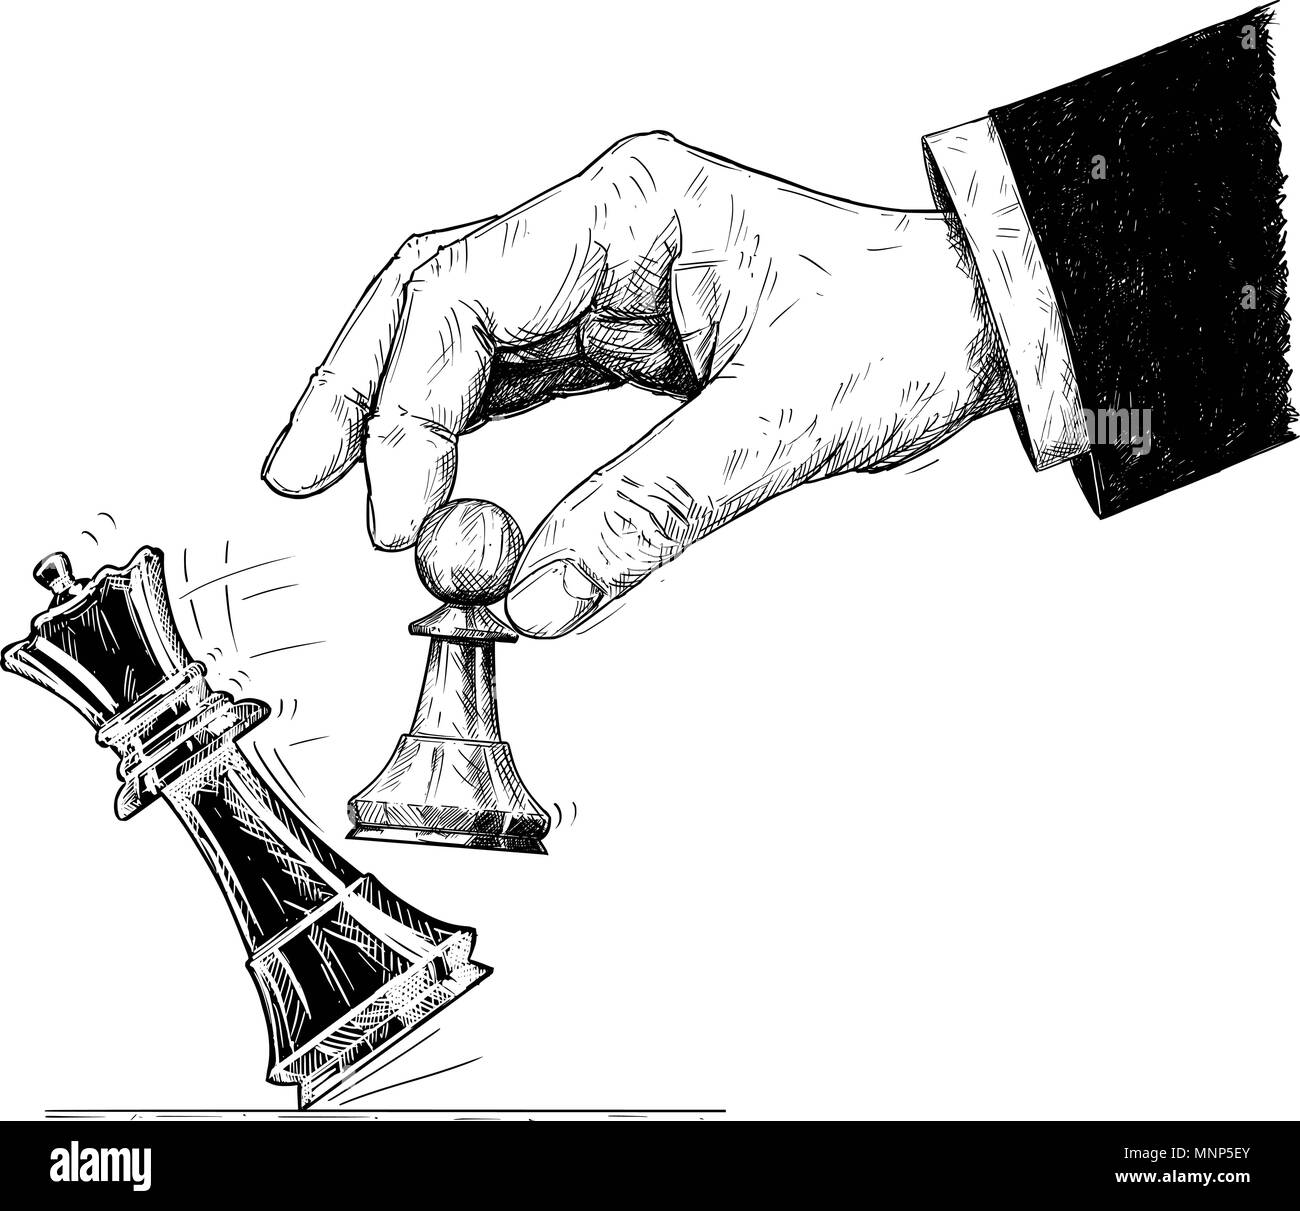 Dessin Artistique vecteur Illustration de Hand Holding Chess Pawn et faire tomber le roi. De mat. Illustration de Vecteur